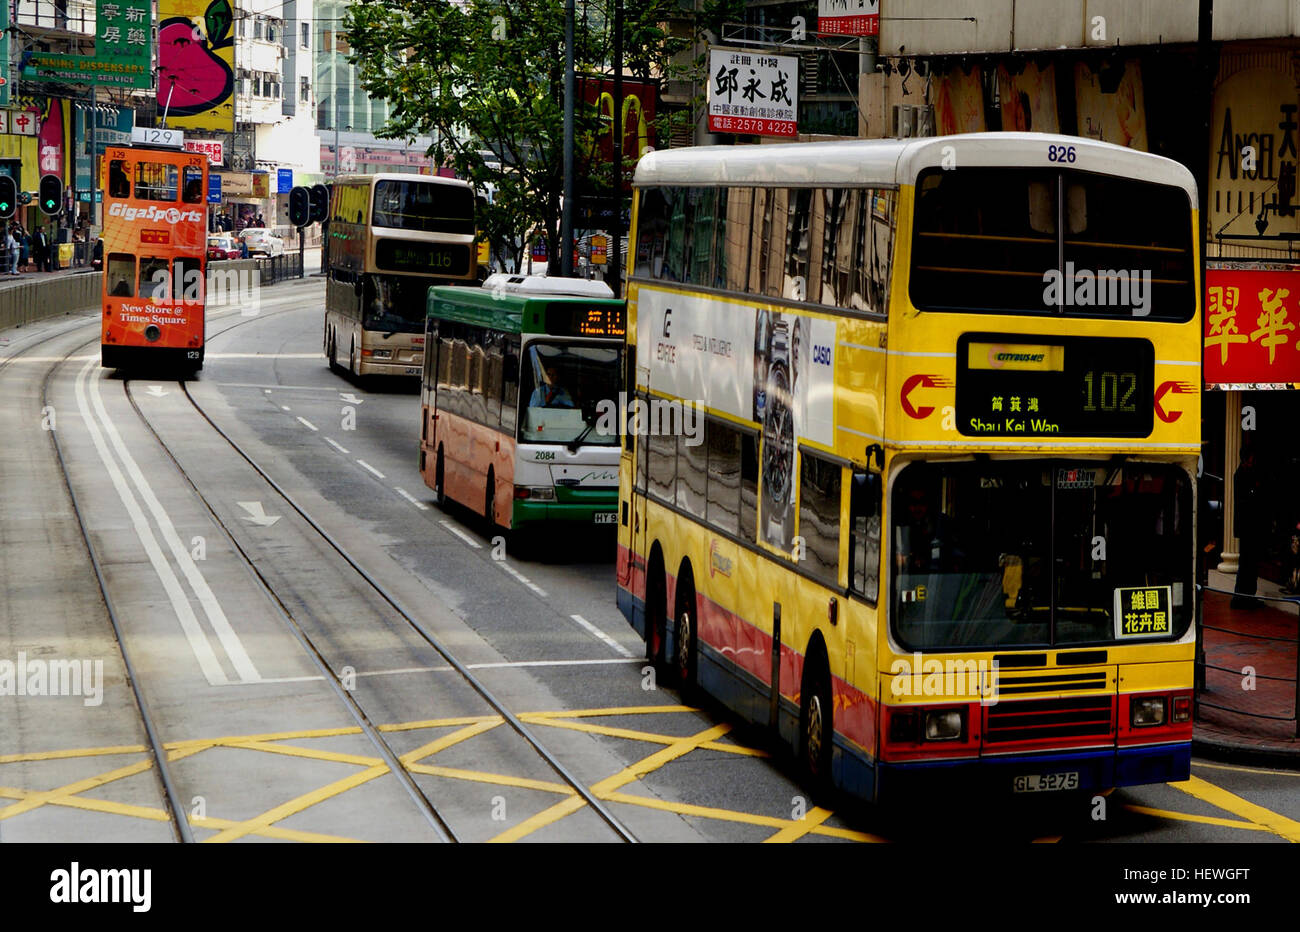 Hong Kong Straßenbahnen ist eine Straßenbahn in Hongkong und eine der frühesten Formen der öffentlichen Verkehrsmittel in Hongkong. Im Besitz und betrieben von Veolia Transport, verkehrt die Straßenbahn auf Hong Kong Island zwischen Shau Kei Wan und Kennedy Town, mit einer Niederlassung im Umlauf Happy Valley. Straßenbahnen in Hongkong wurden nicht nur ein Transportmittel für über 100 Jahre, sondern auch eine wichtige touristische Attraktion und eines der umweltfreundlichsten Möglichkeiten des Reisens in Hong Kong. Es ist die einzige ausschließlich Doppeldecker betrieben Straßenbahnsystem in der Welt, und einer von nur drei nicht-Erbe Straßenbahn-Systemen der Welt th Stockfoto